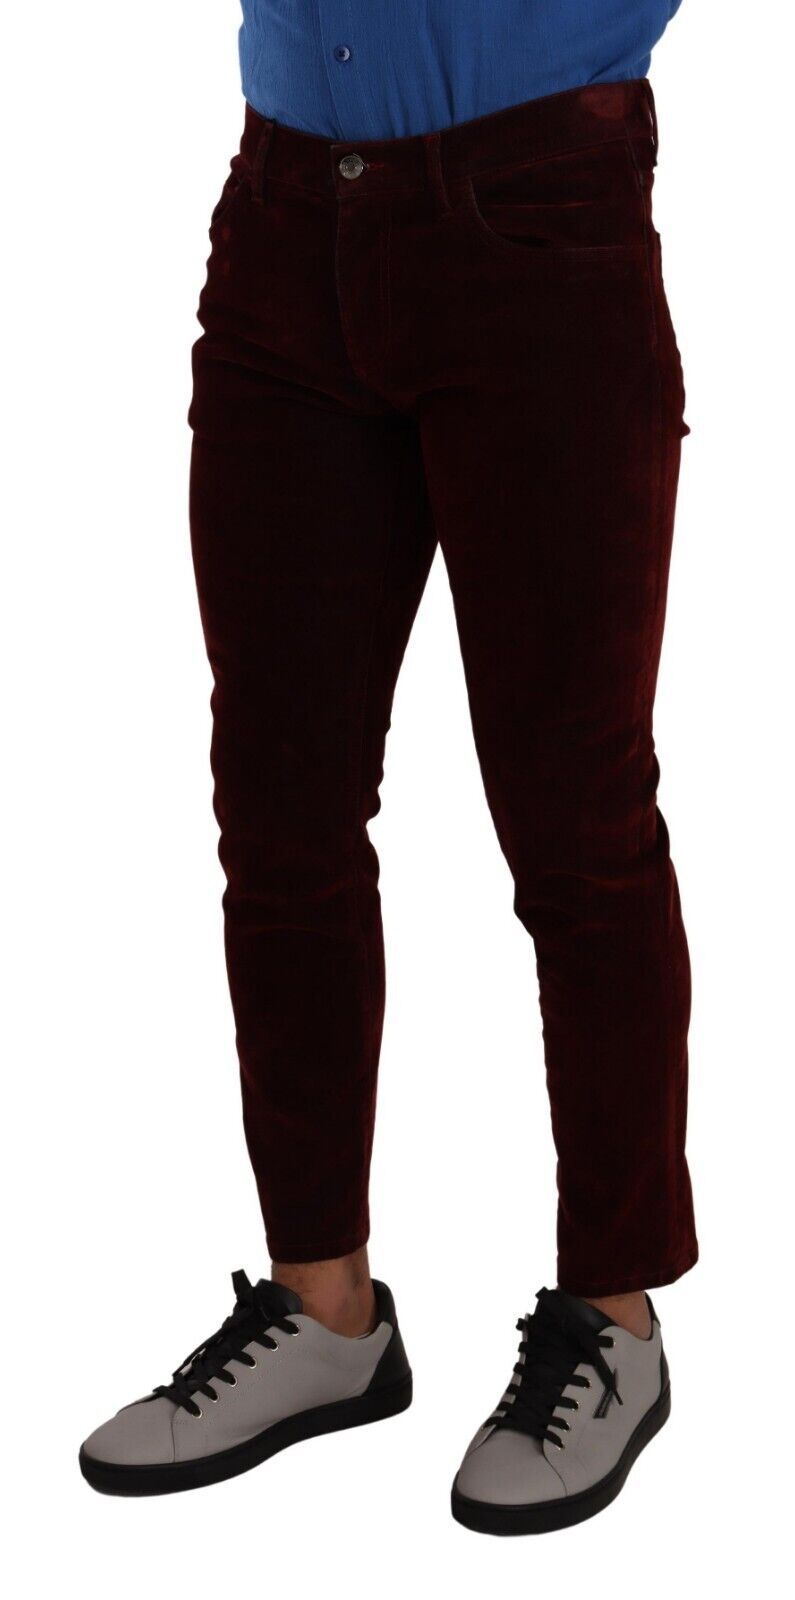 Dolce & Gabbana Dark Red Cotton Velvet Skinny Men Denim Jeans